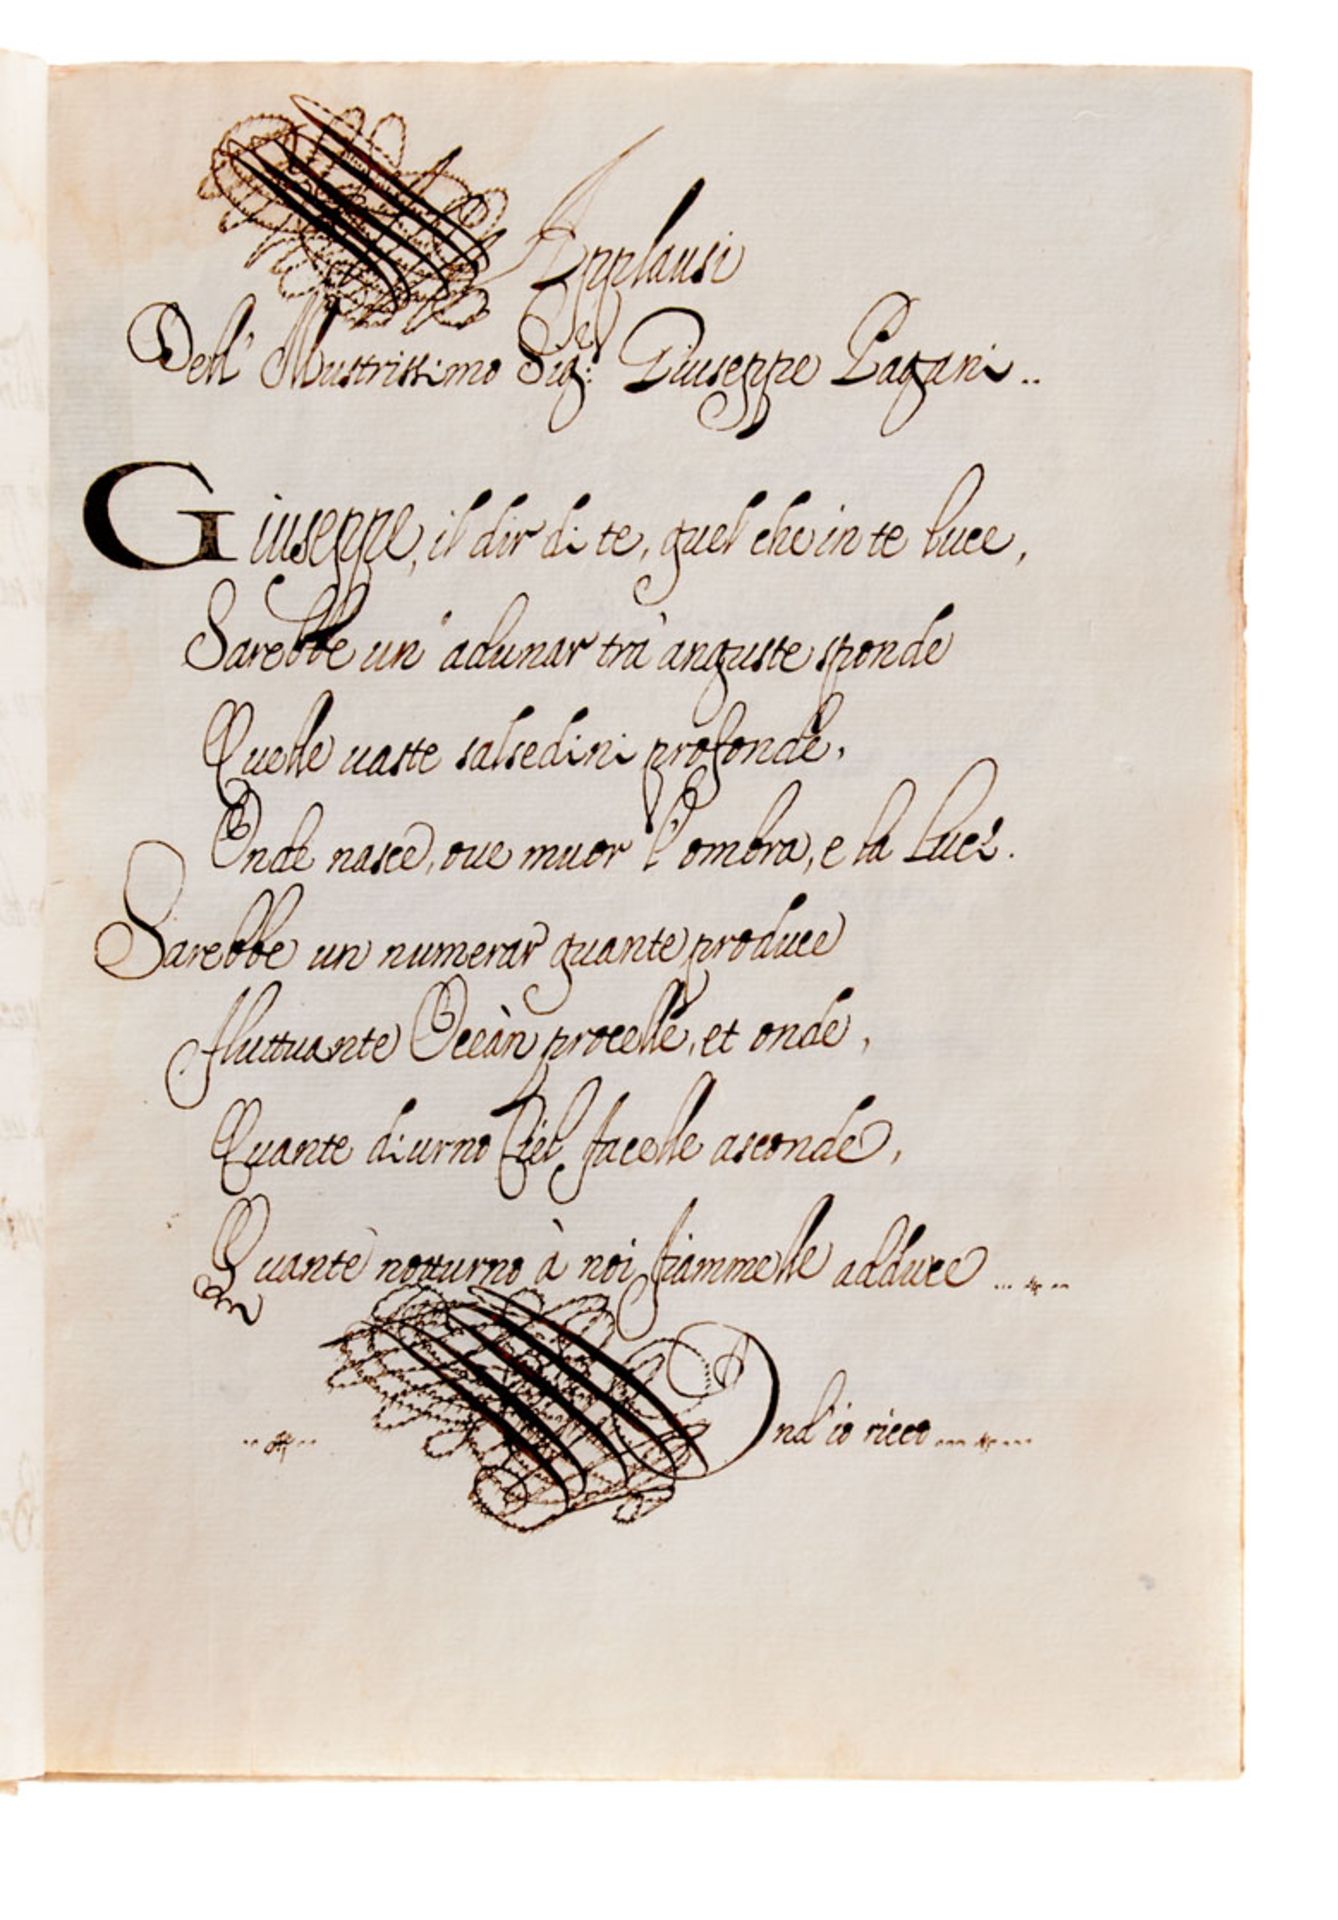 Belluno - "Amorose passioni d'un cuore seguace di bellezza senza paragone". Italienische Handschrift - Image 4 of 4